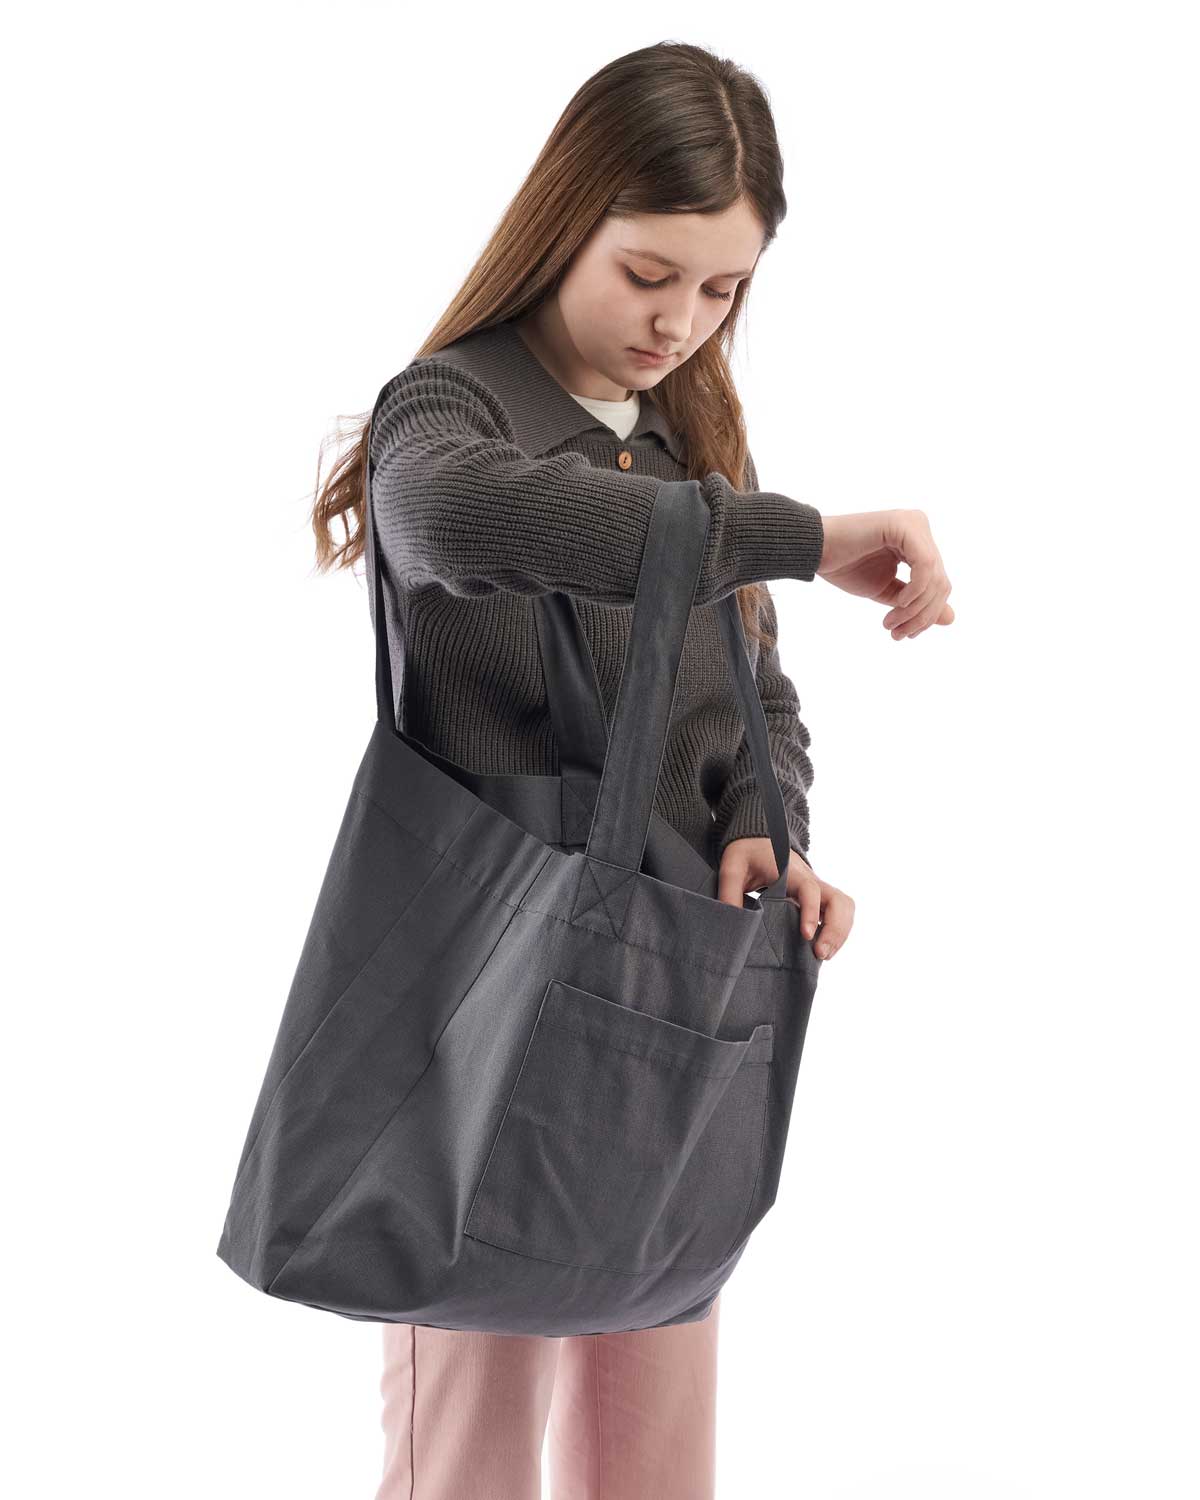 Jersey de niña Mishti de punto en color gris oscuro con cuello y botones de madera decorativos